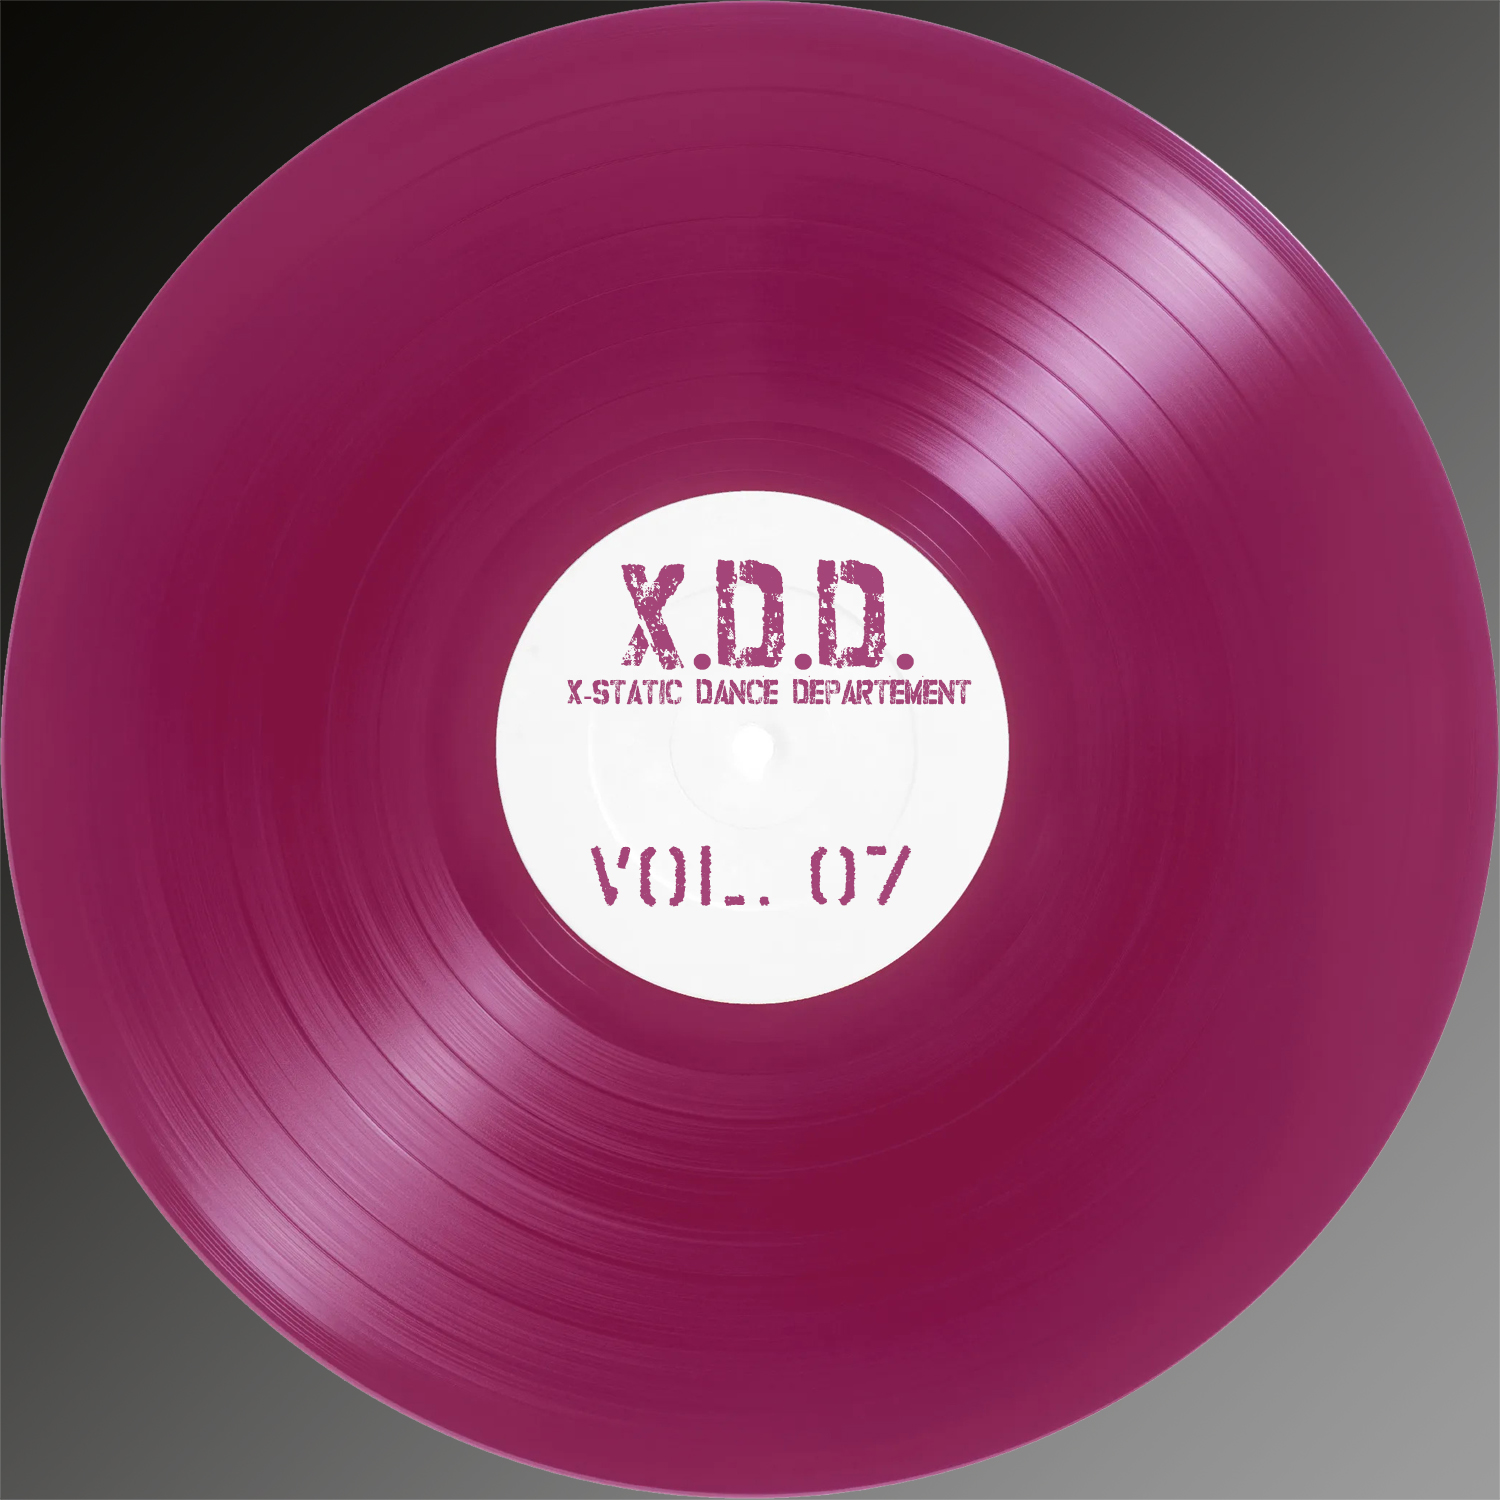 X.D.D. – Vol. 07